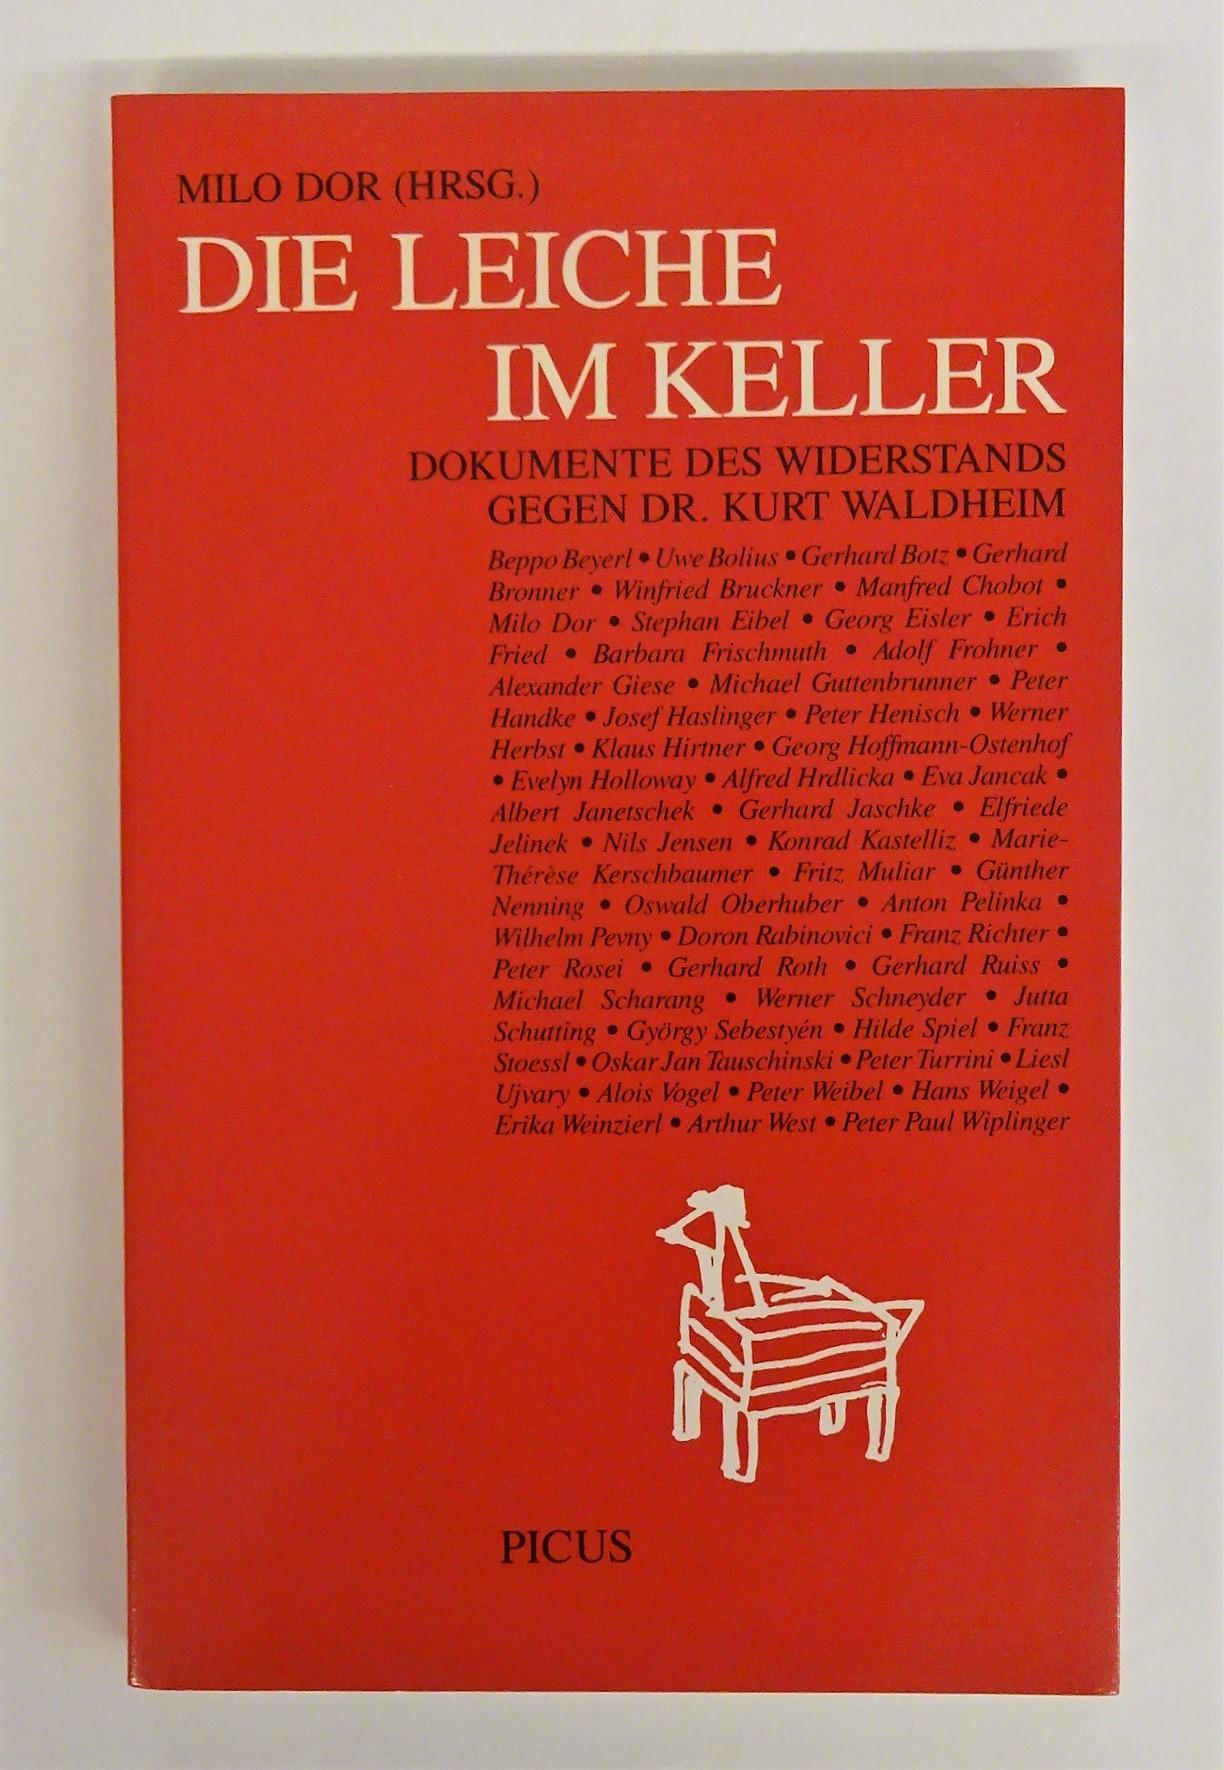 Die Leiche im Keller. Dokumente des Widerstands gegen Dr. Kurt Waldheim. - Dor, Milo (Hg.)